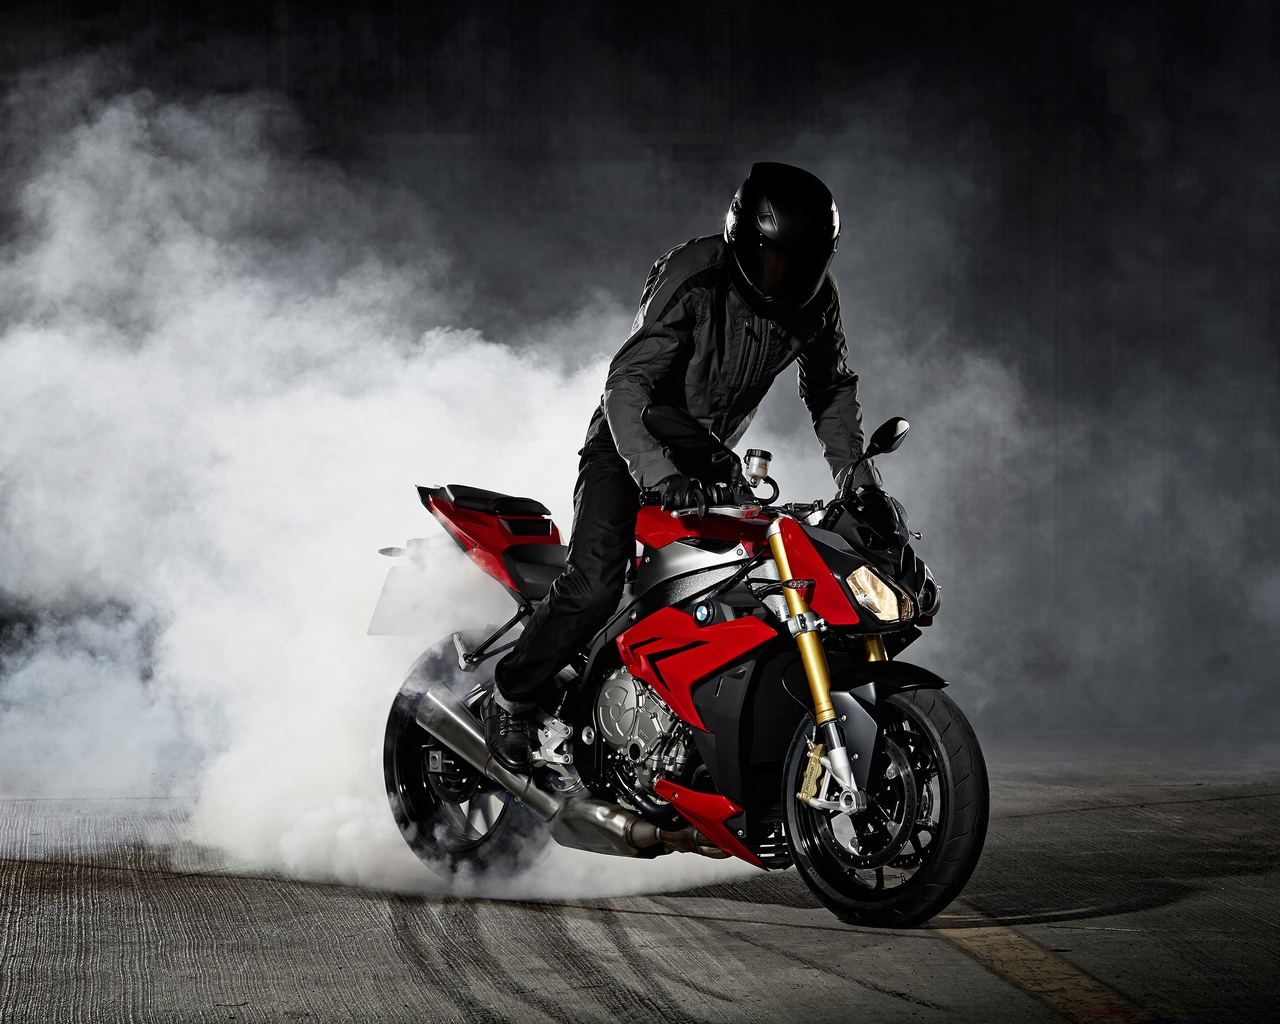 Картинка: Мотоцикл, BMW, S1000R, байк, мужчина, шлем, дым